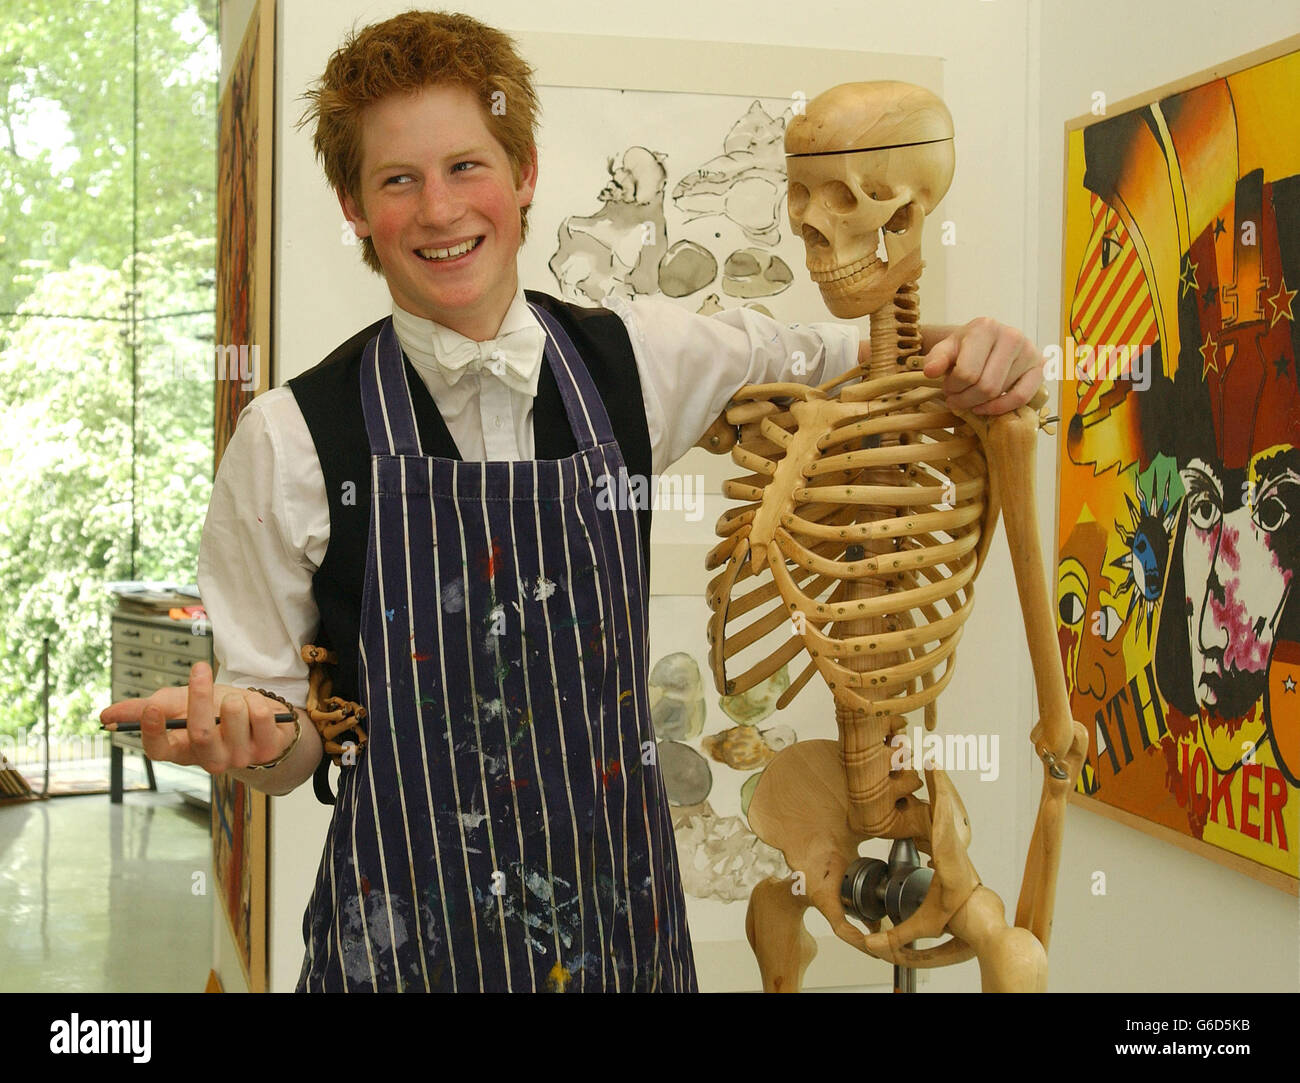 Un artista appassionato, il principe Harry, il figlio più giovane del principe del Galles, al lavoro, nella scuola di disegno dell'Eton College, che è stata aperta lo scorso autunno dall'artista, Sir Howard Hodgkin. Foto Stock